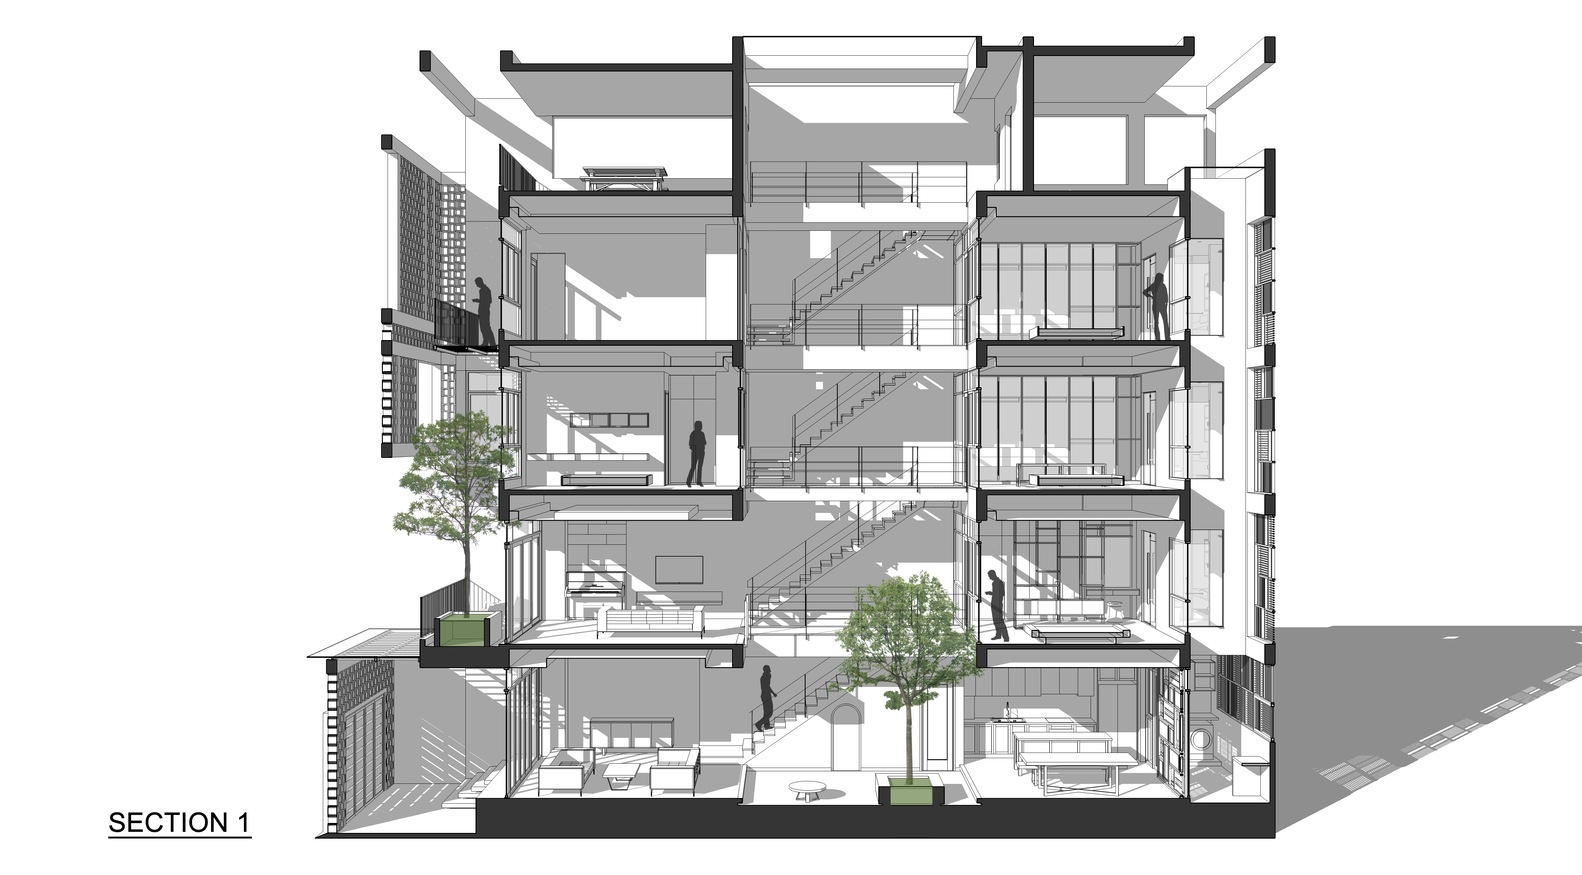 Thiết kế hiện đại kết hợp yếu tố truyền thống Bắc bộ của ngôi nhà 5 tầng ở Hà Nội - Ảnh 17